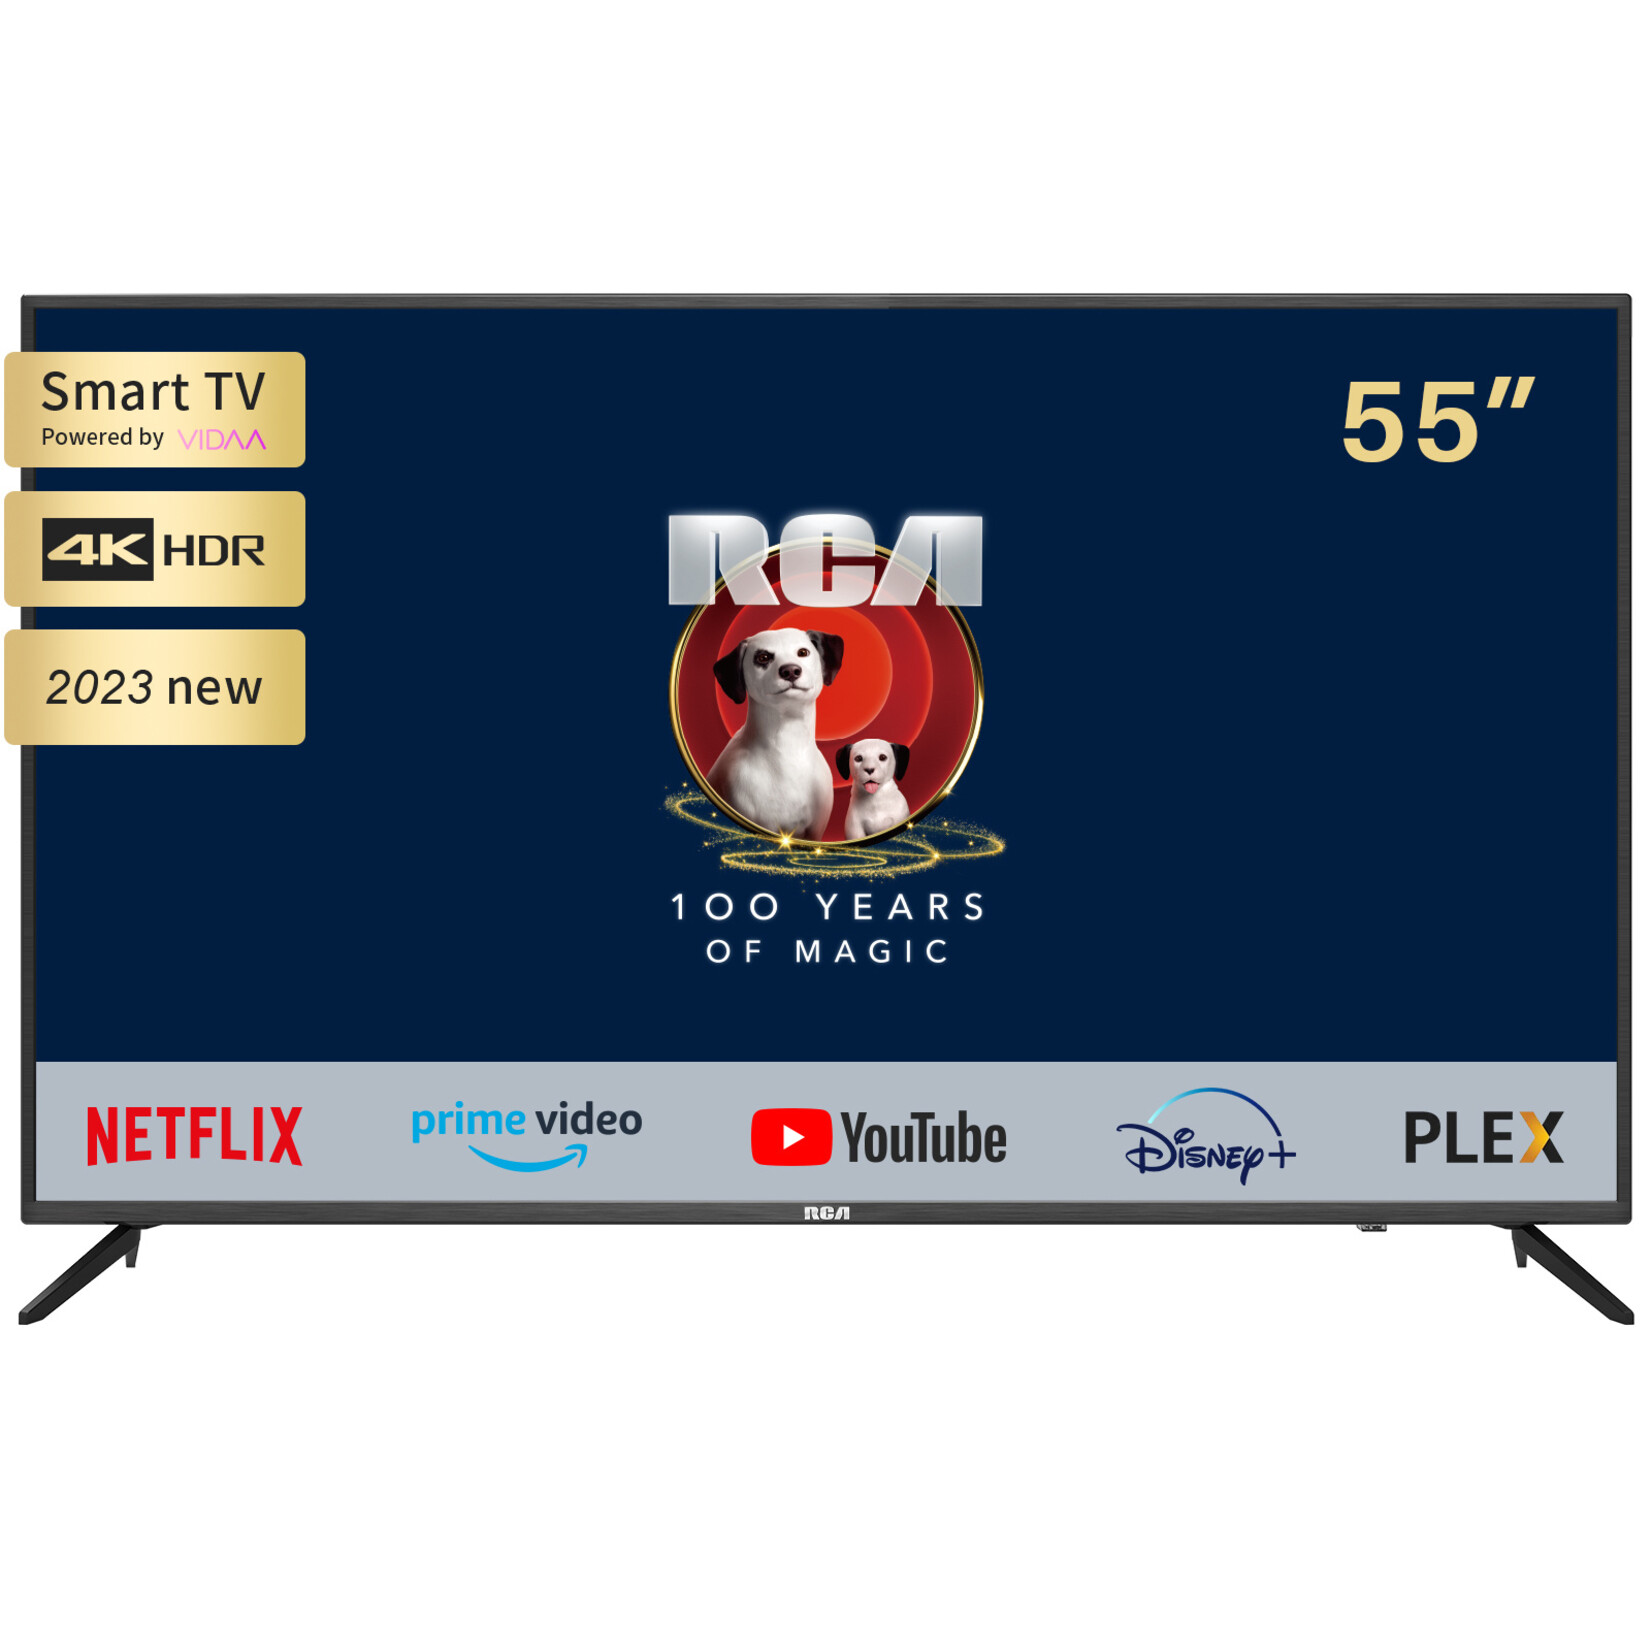 RCA RCA  iRV55H3 4K Fernseher 55 Zoll (140 cm) Smart TV mit HDR, Netflix, Prime Video, Rakuten TV, DAZN, Disney+, YouTube, UVM, WiFi, Sprachsteuerungs, Triple-Tuner DVB-T2 / S2 / C, Dolby Audio